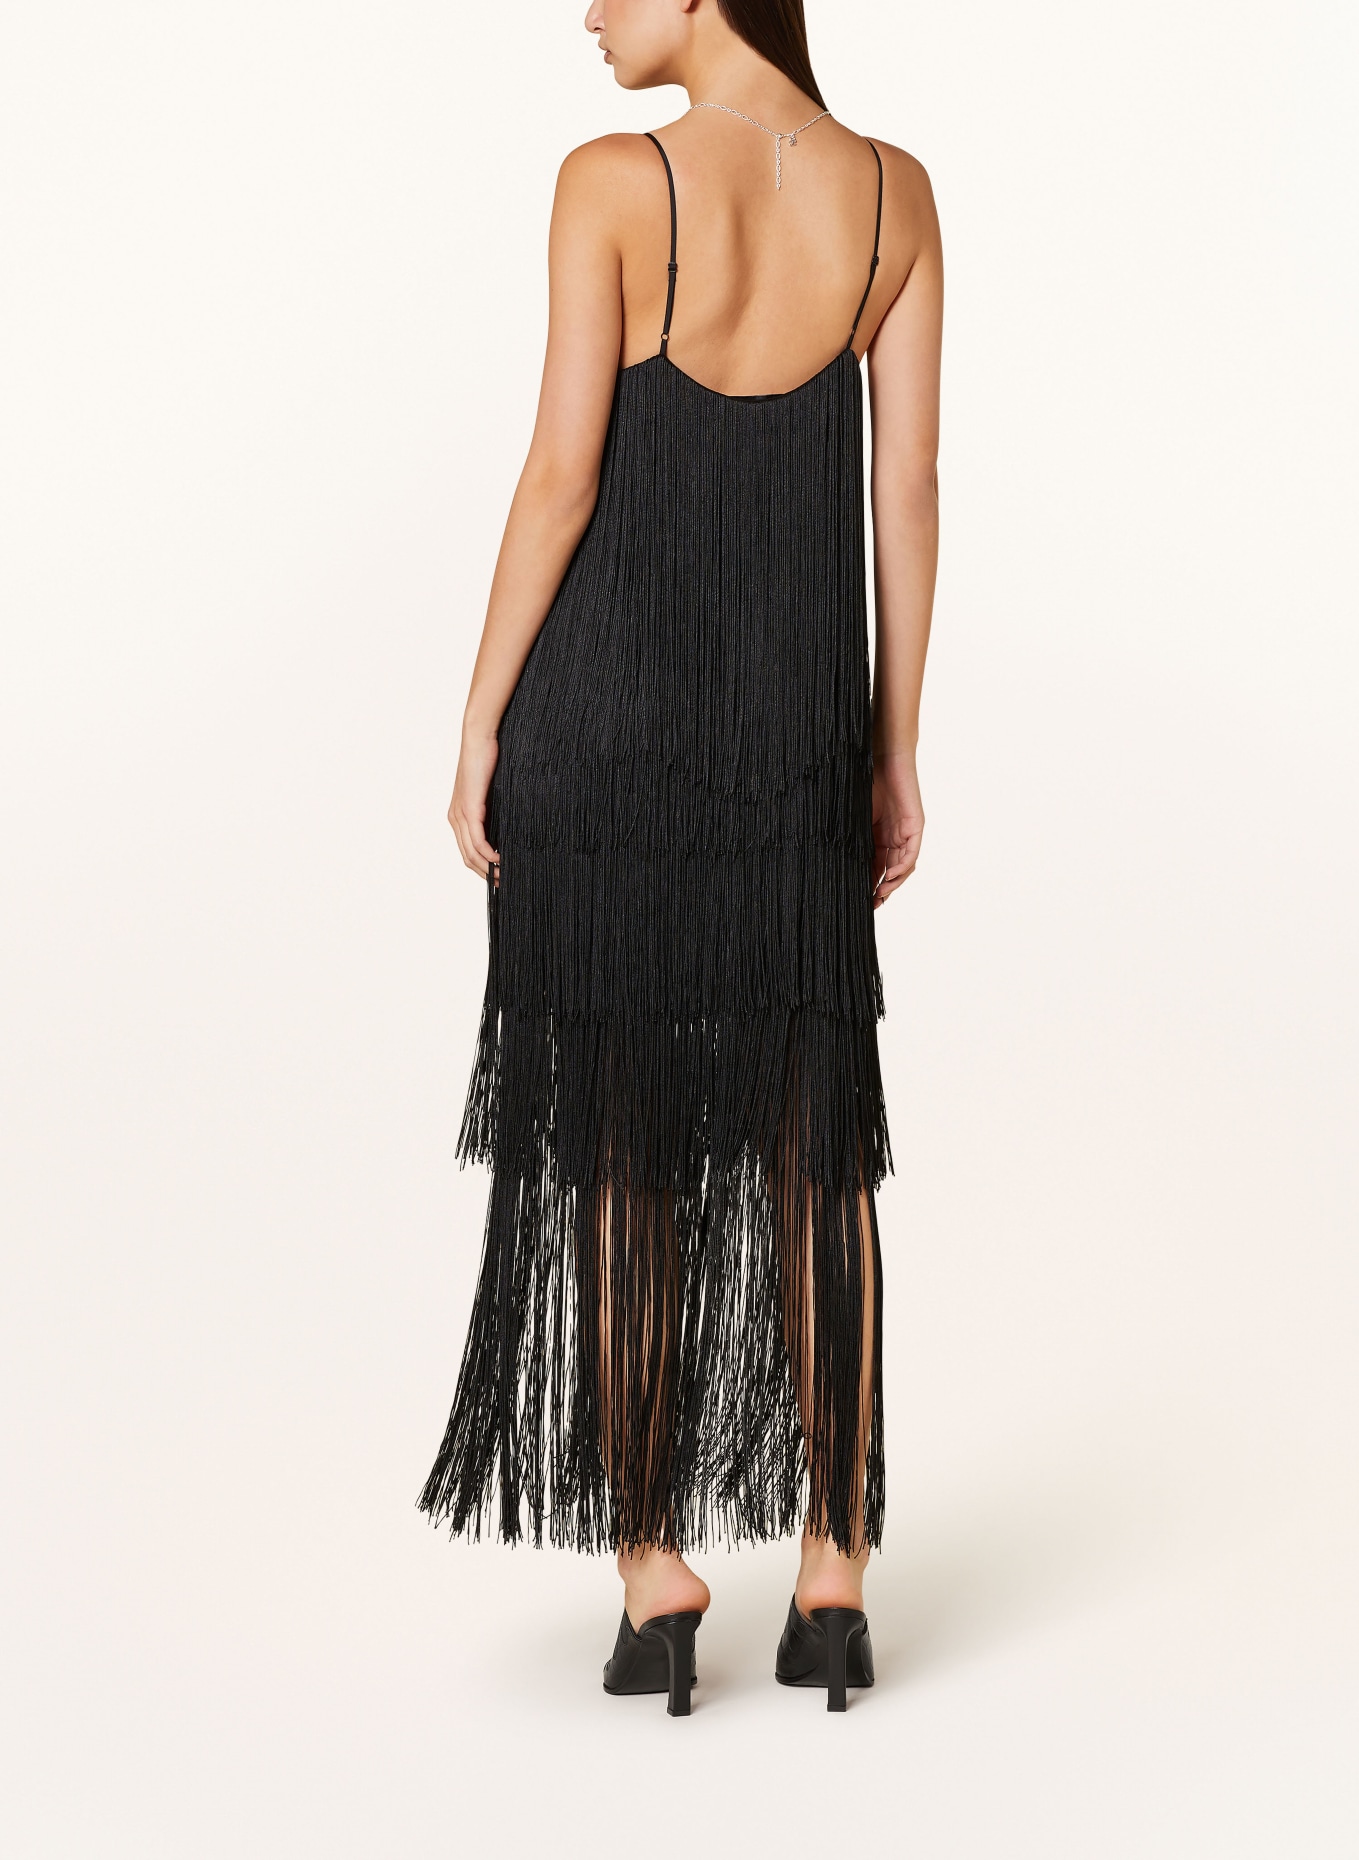 ENVELOPE 1976 Dress FRINGE with fringes, Color: BLACK (Image 3)